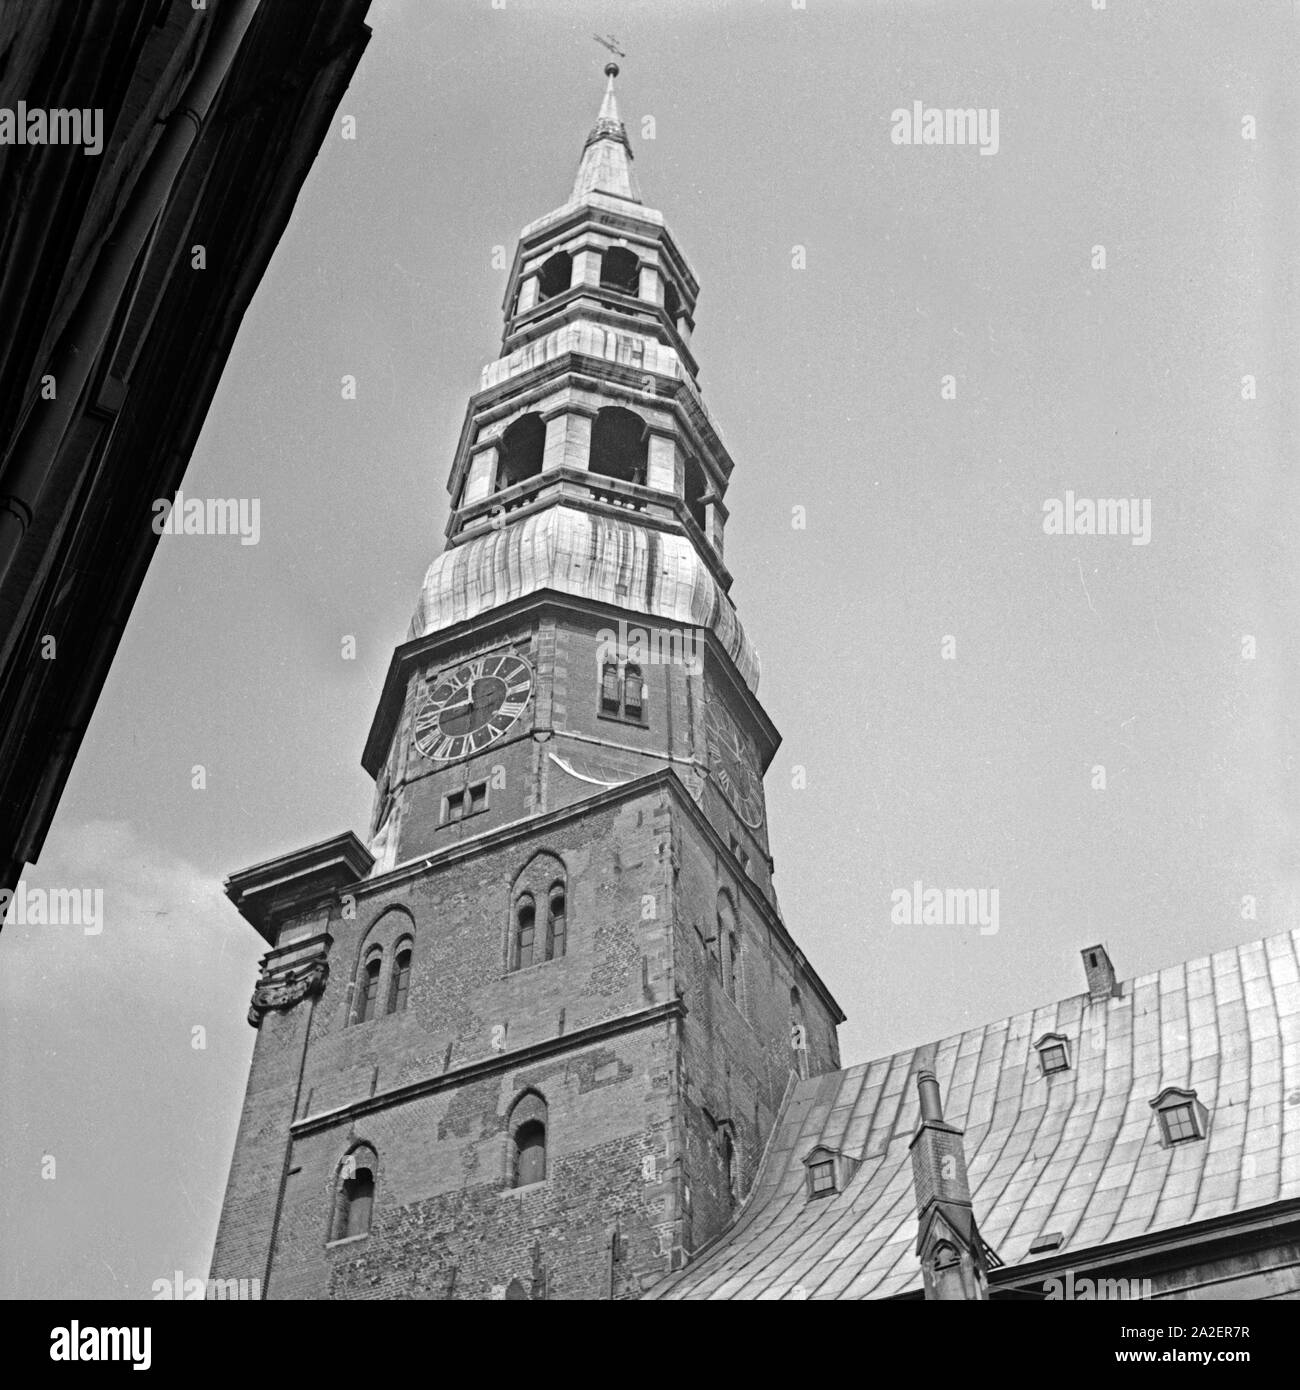 Der Turm der Kirche St. Katharinen in Hamburg, Deutschland 1930er Jahre. Belfry of St. Catherine's church at Hamburg, Germany 1930s. Stock Photo